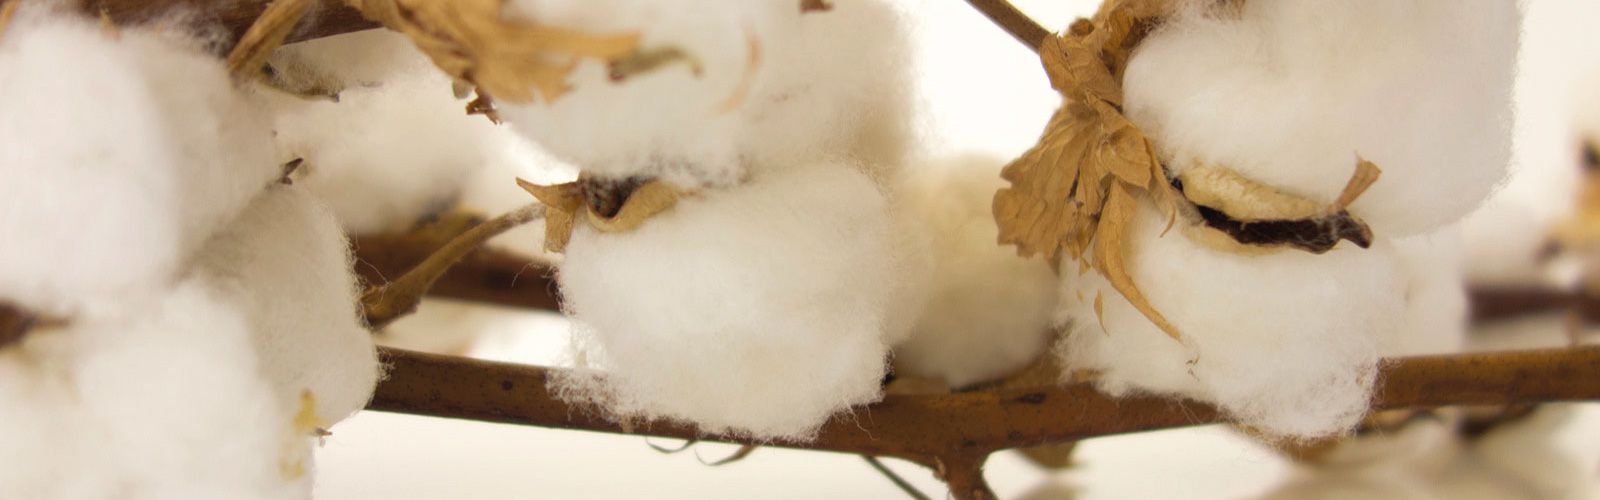 Baumwollpflanze mit Rohbaumwolle zur Produktion für Biotaschen, Biogewebe  & ökologische, nachhaltige Fairtrade Taschen